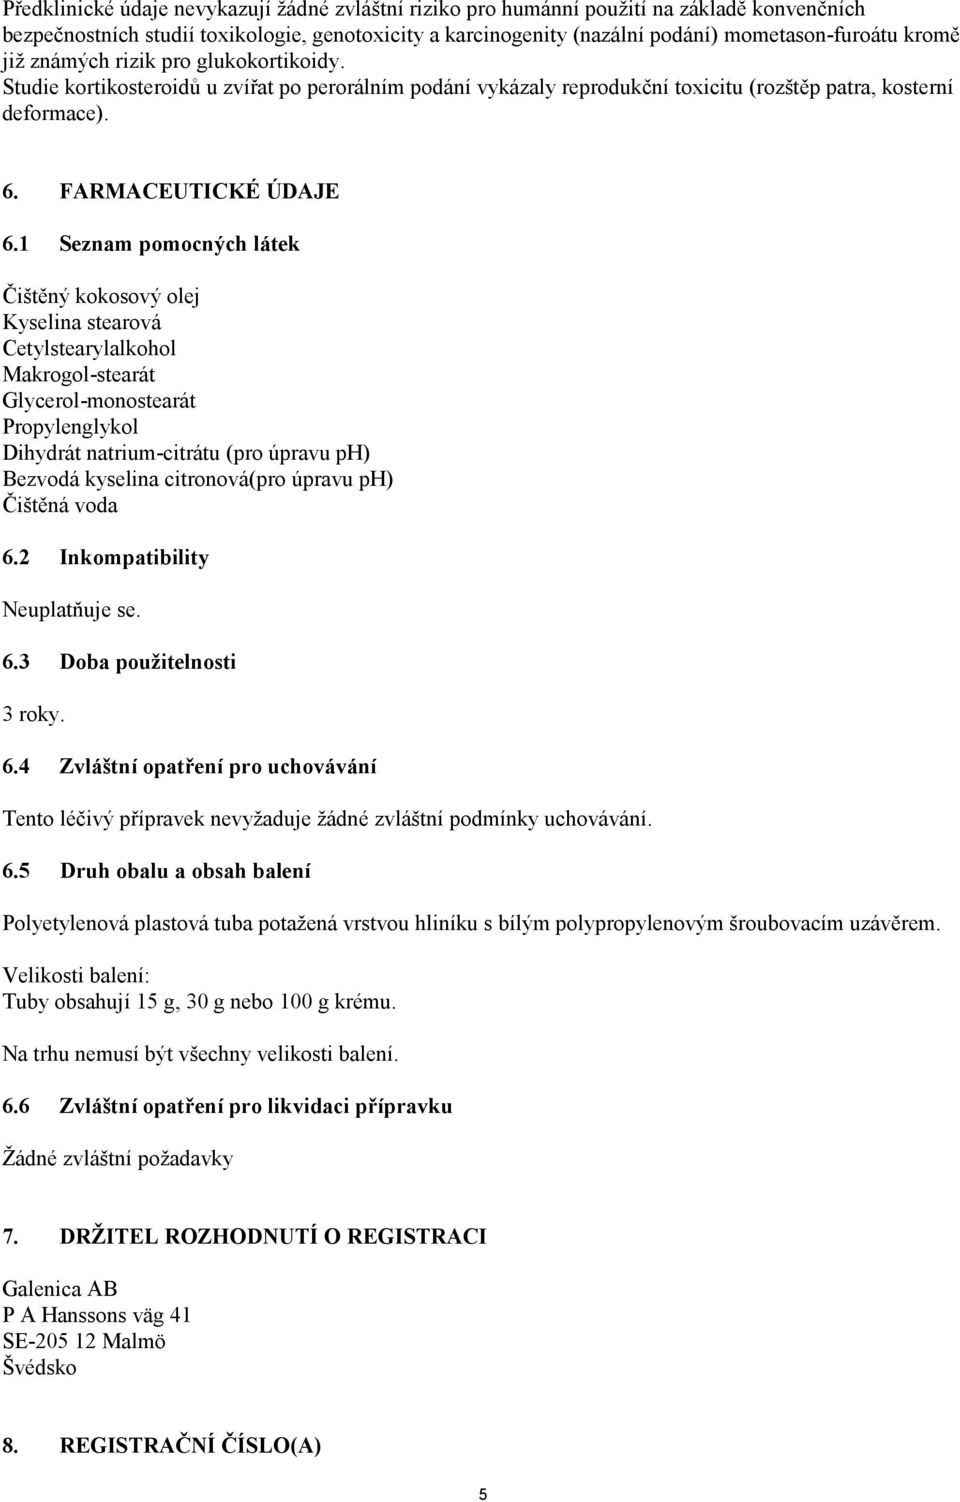 1 Seznam pomocných látek Čištěný kokosový olej Kyselina stearová Cetylstearylalkohol Makrogol-stearát Glycerol-monostearát Propylenglykol Dihydrát natrium-citrátu (pro úpravu ph) Bezvodá kyselina